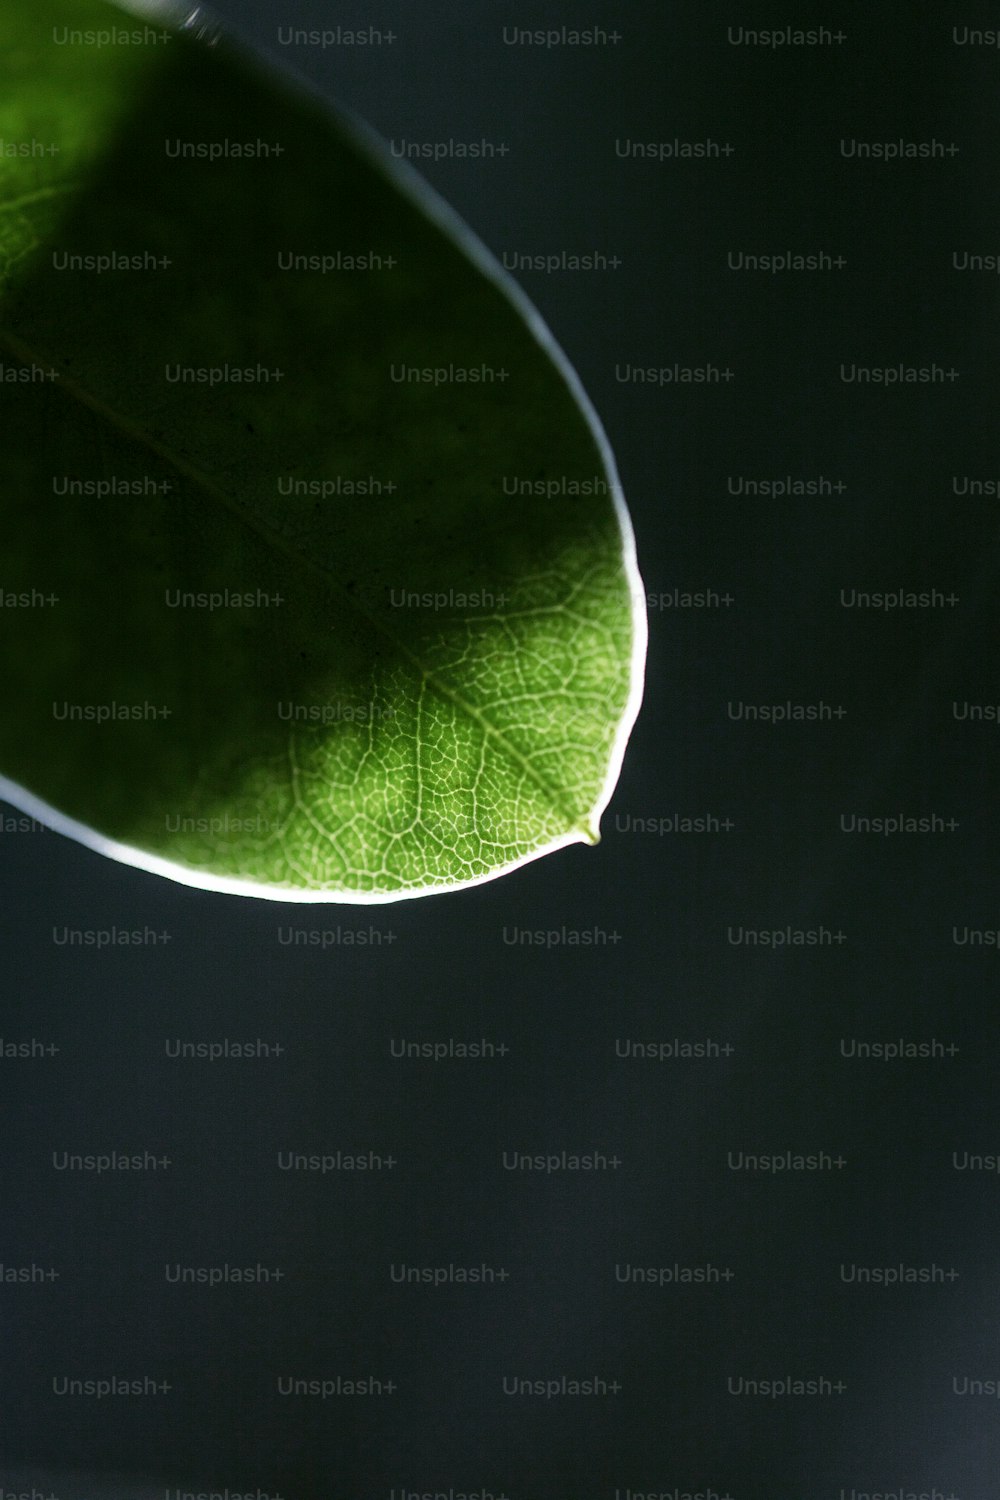 um close up de uma folha verde em um fundo preto